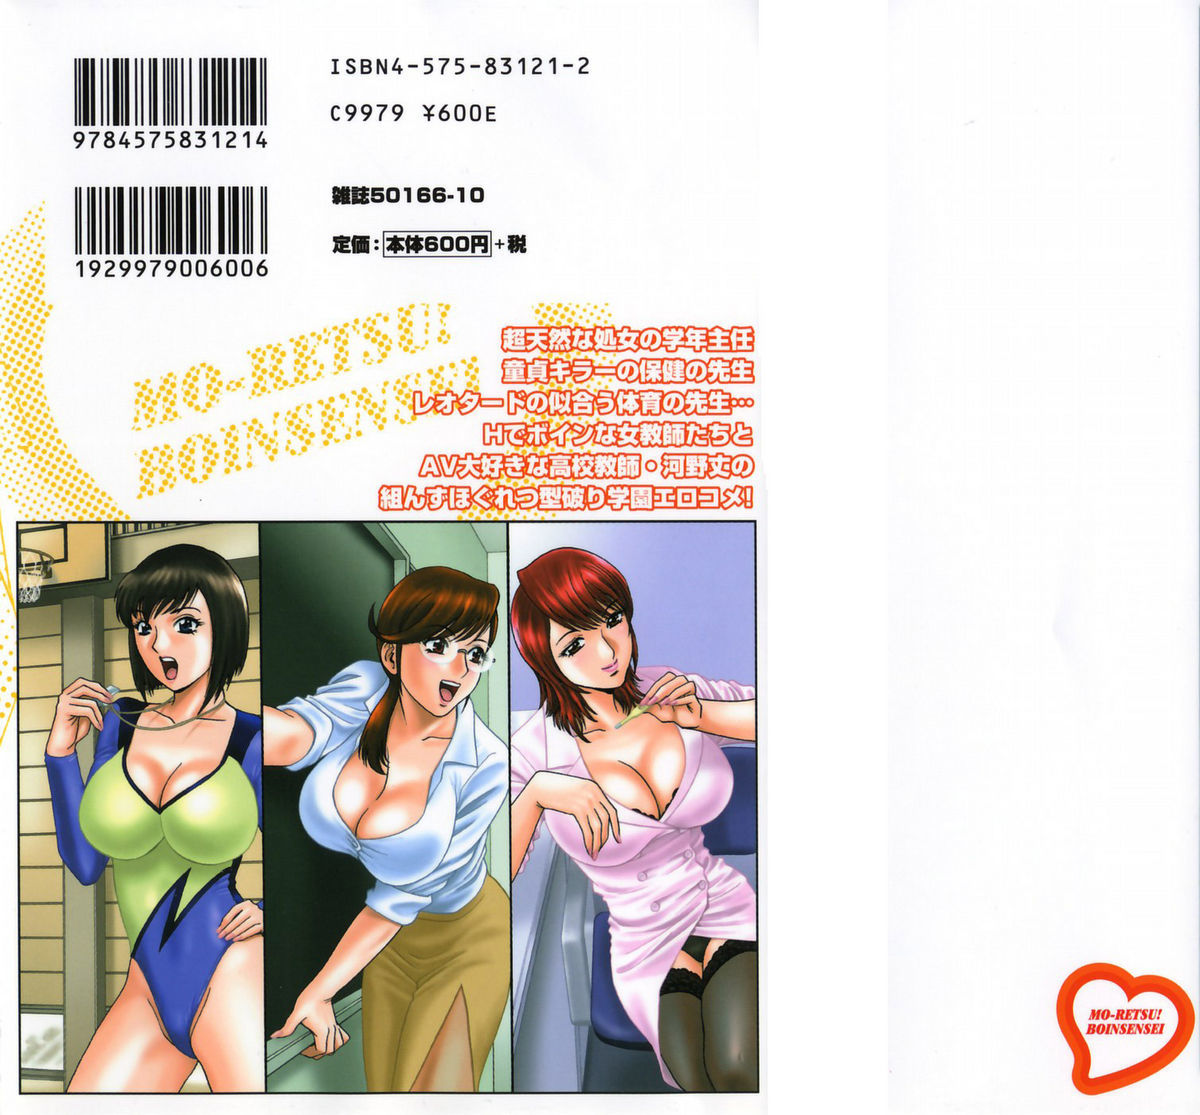 Mo-Retsu! Boin SenseiVol.1 1 hentai manga